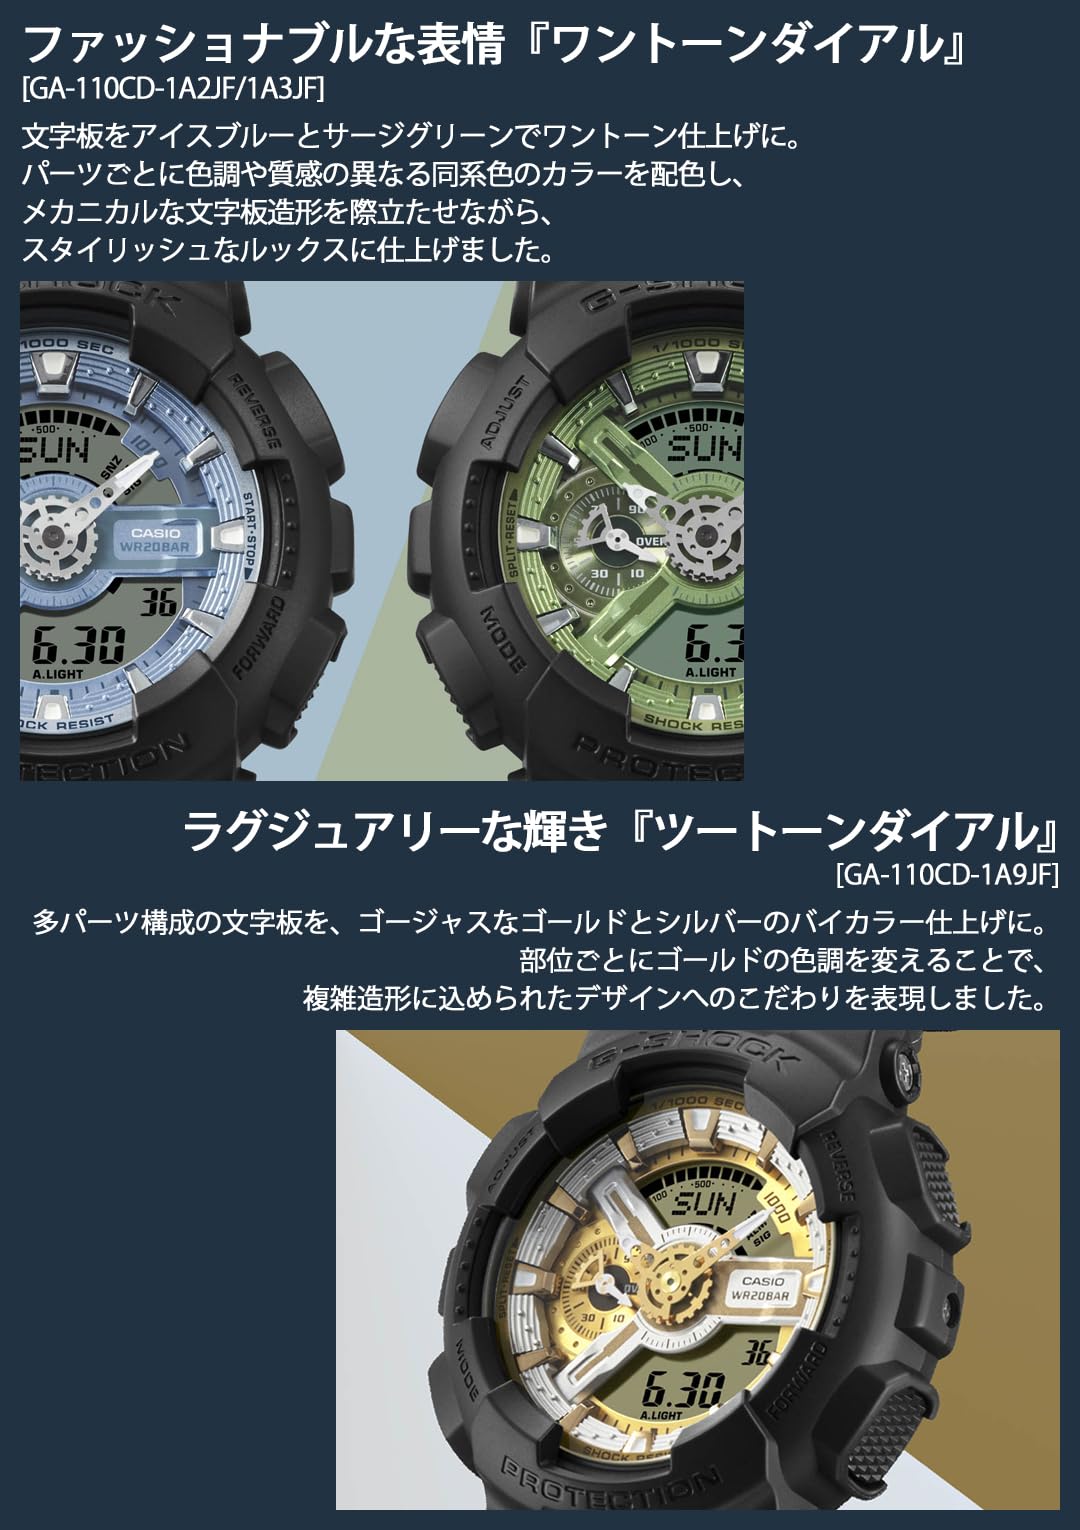 ジーショック [カシオ] 腕時計 【国内正規品】Metallic Color Dial Series GA-110CD-1A3JF メンズ ブラック - BanzaiHobby